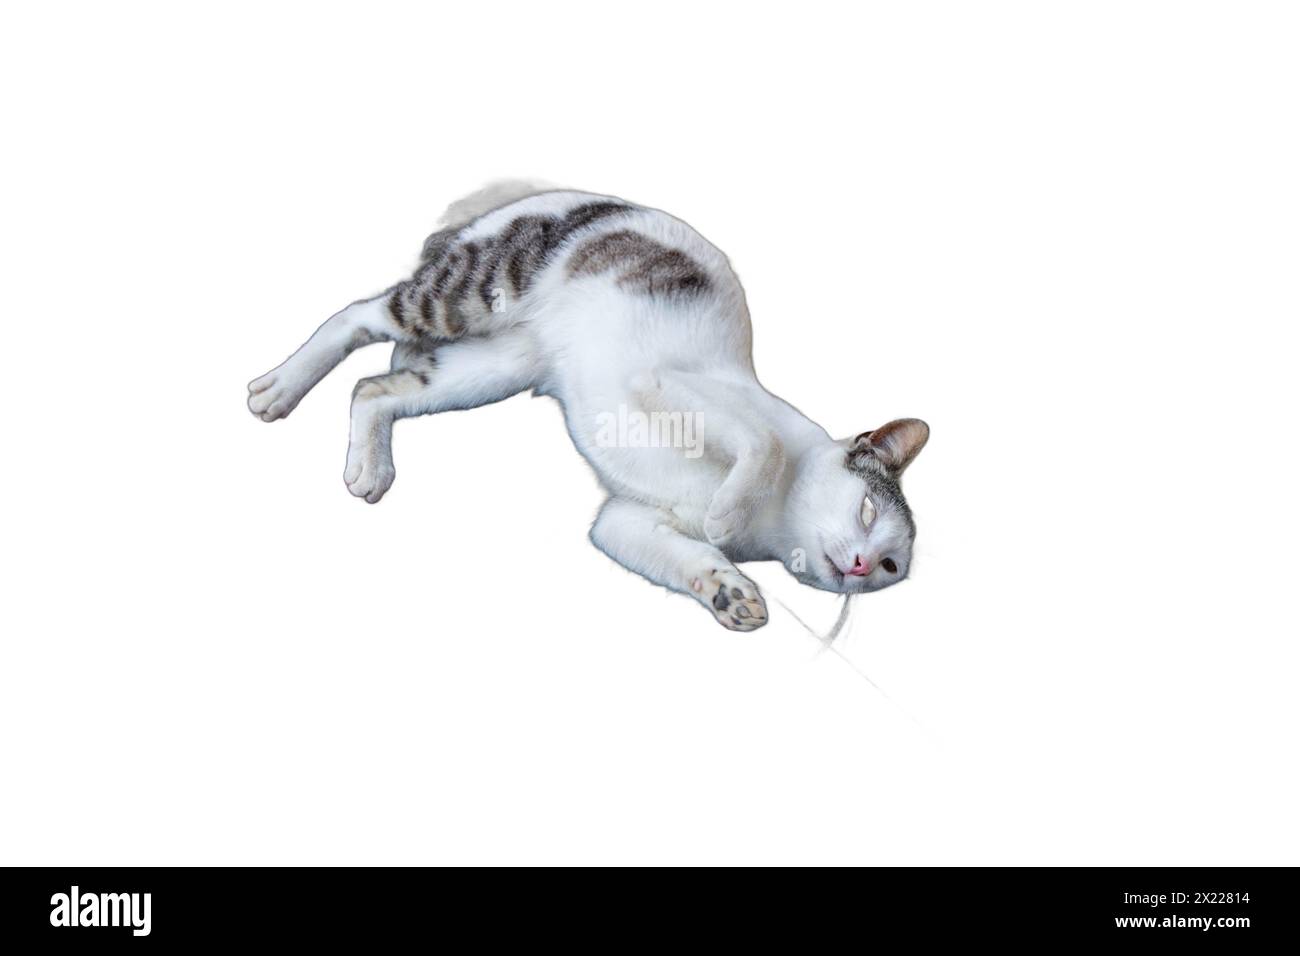 Immagini isolate di gatti sereni che si rilassano in varie pose. Perfetto per disegni legati agli animali domestici, illustrazioni per gli amanti degli animali e grafica accogliente. Foto Stock